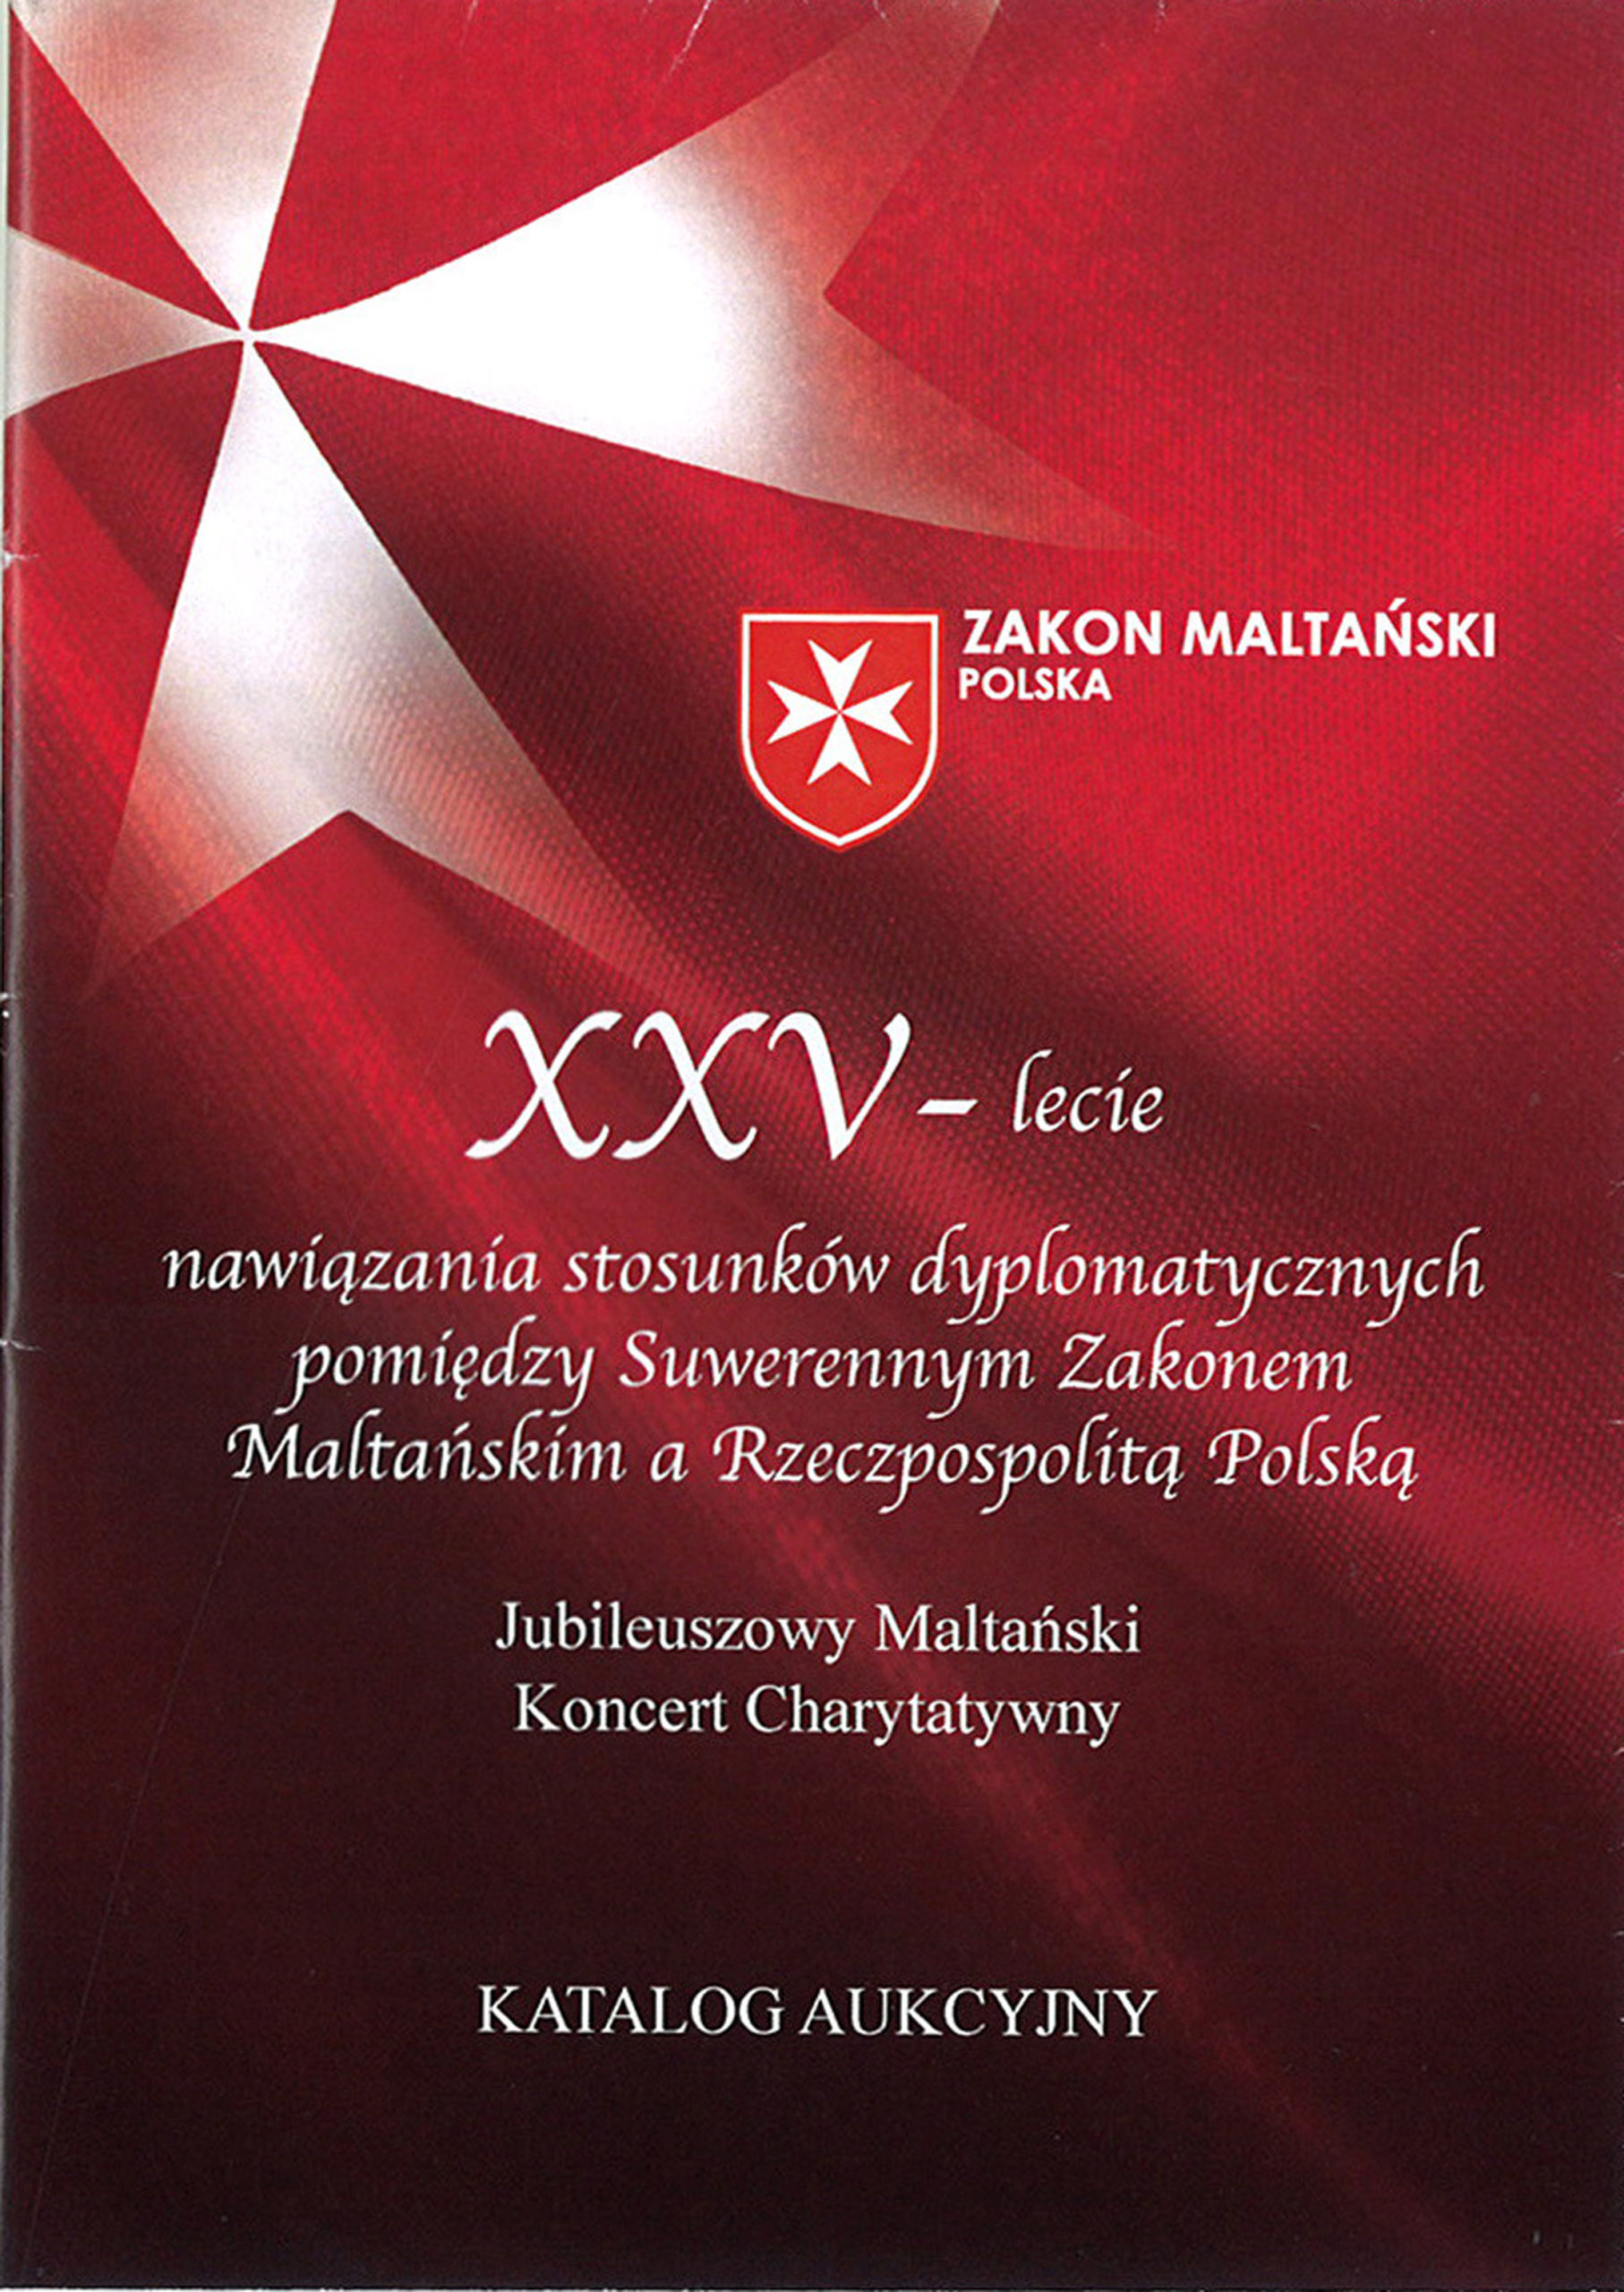 Aukcja dzieł sztuki z okazji XXV - lecia nawiązania stosunków dyplomatycznych..., Warszawa 2015